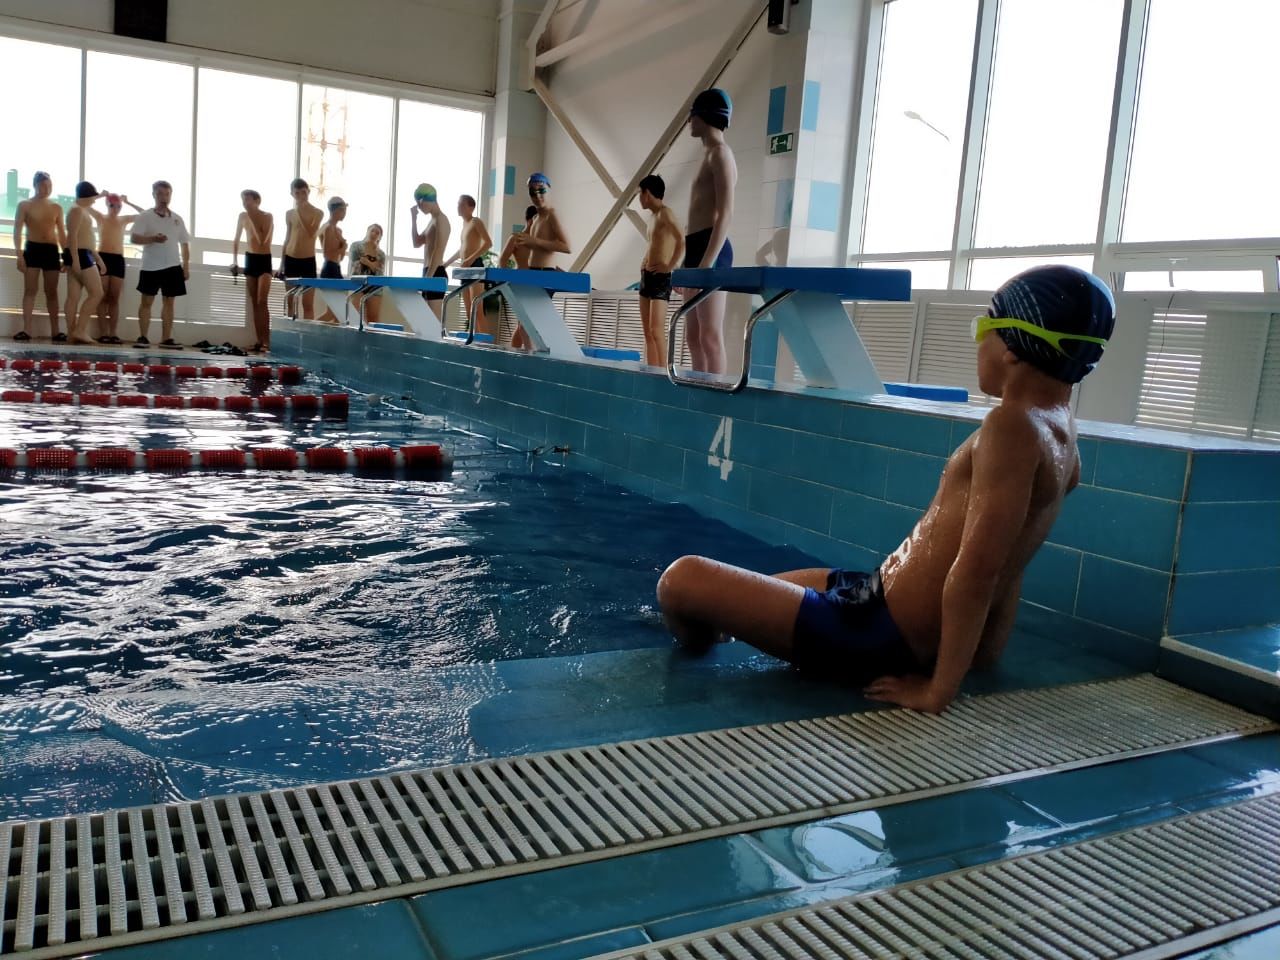 Cоревнования по плаванию среди воспитанников спортивной школы